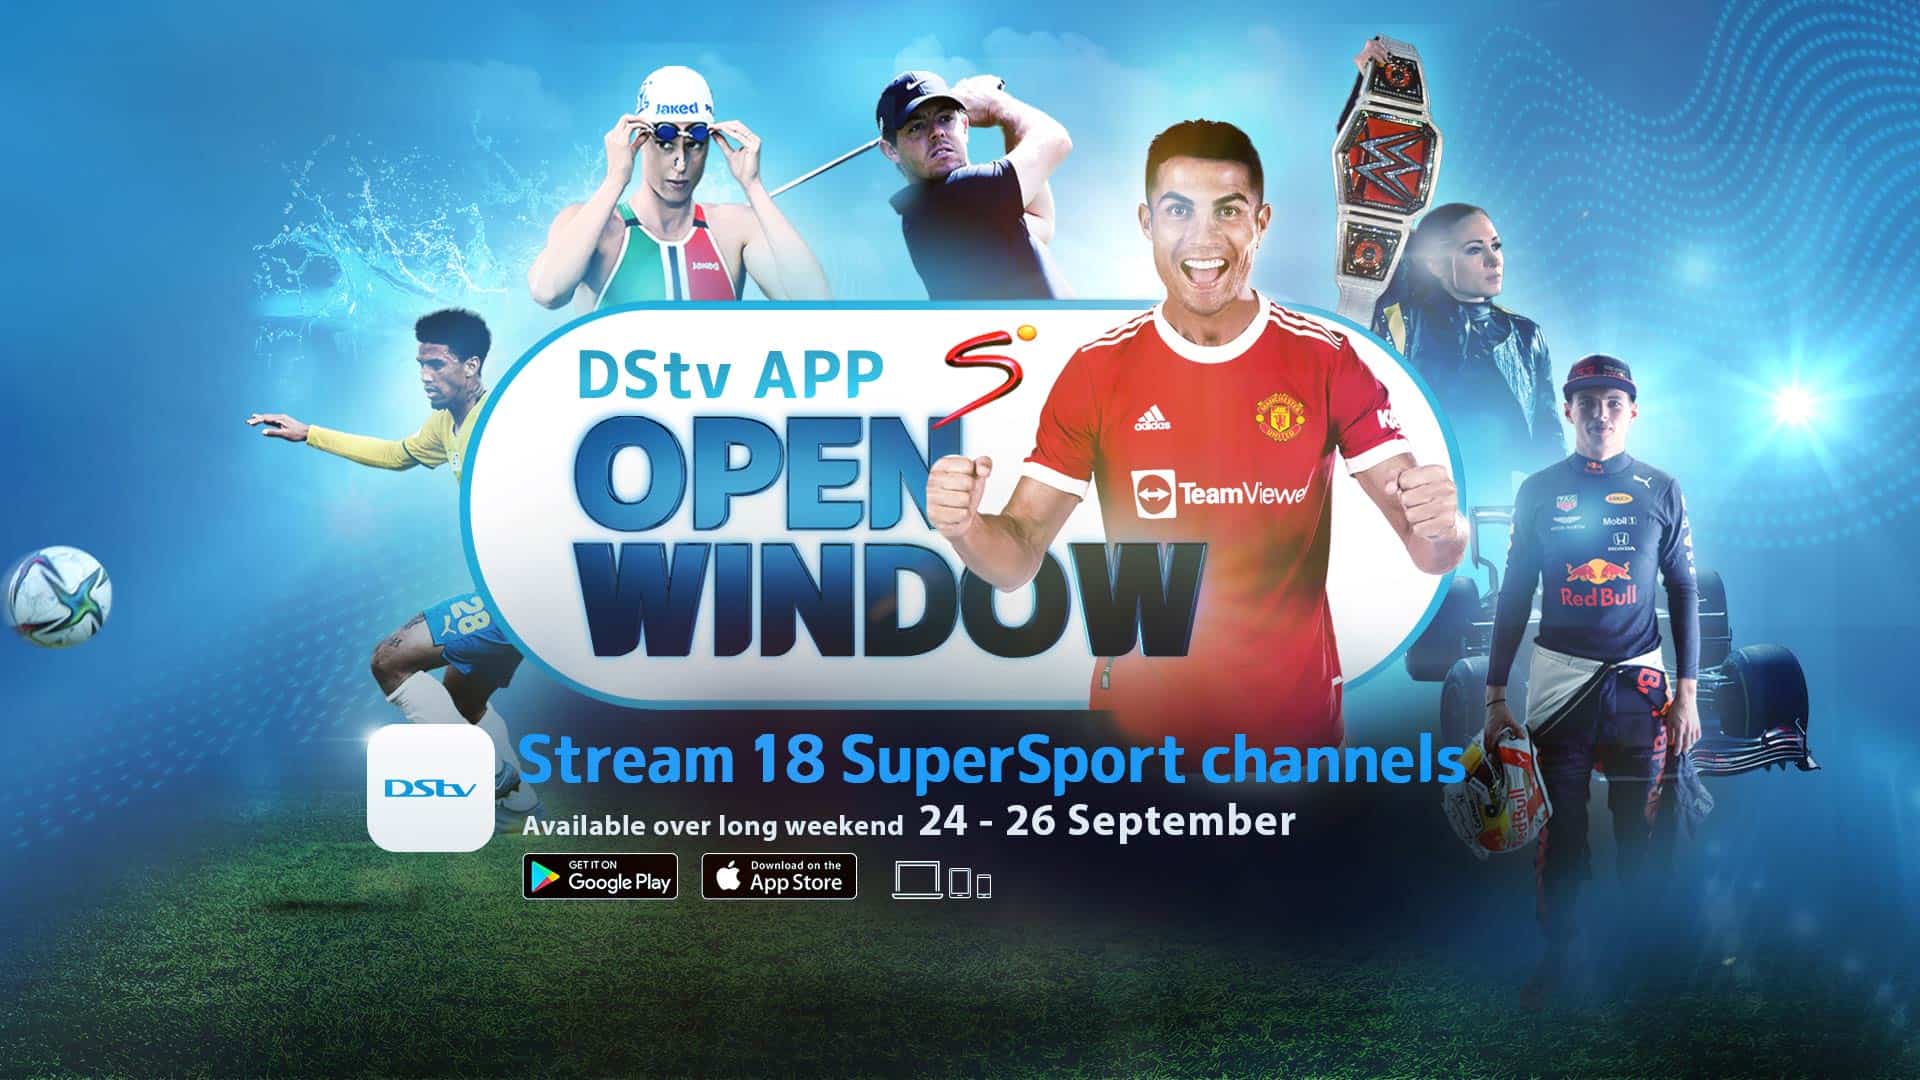 DStv App Sport Open Window 24-26 September 2021 Watch it on the DStv App